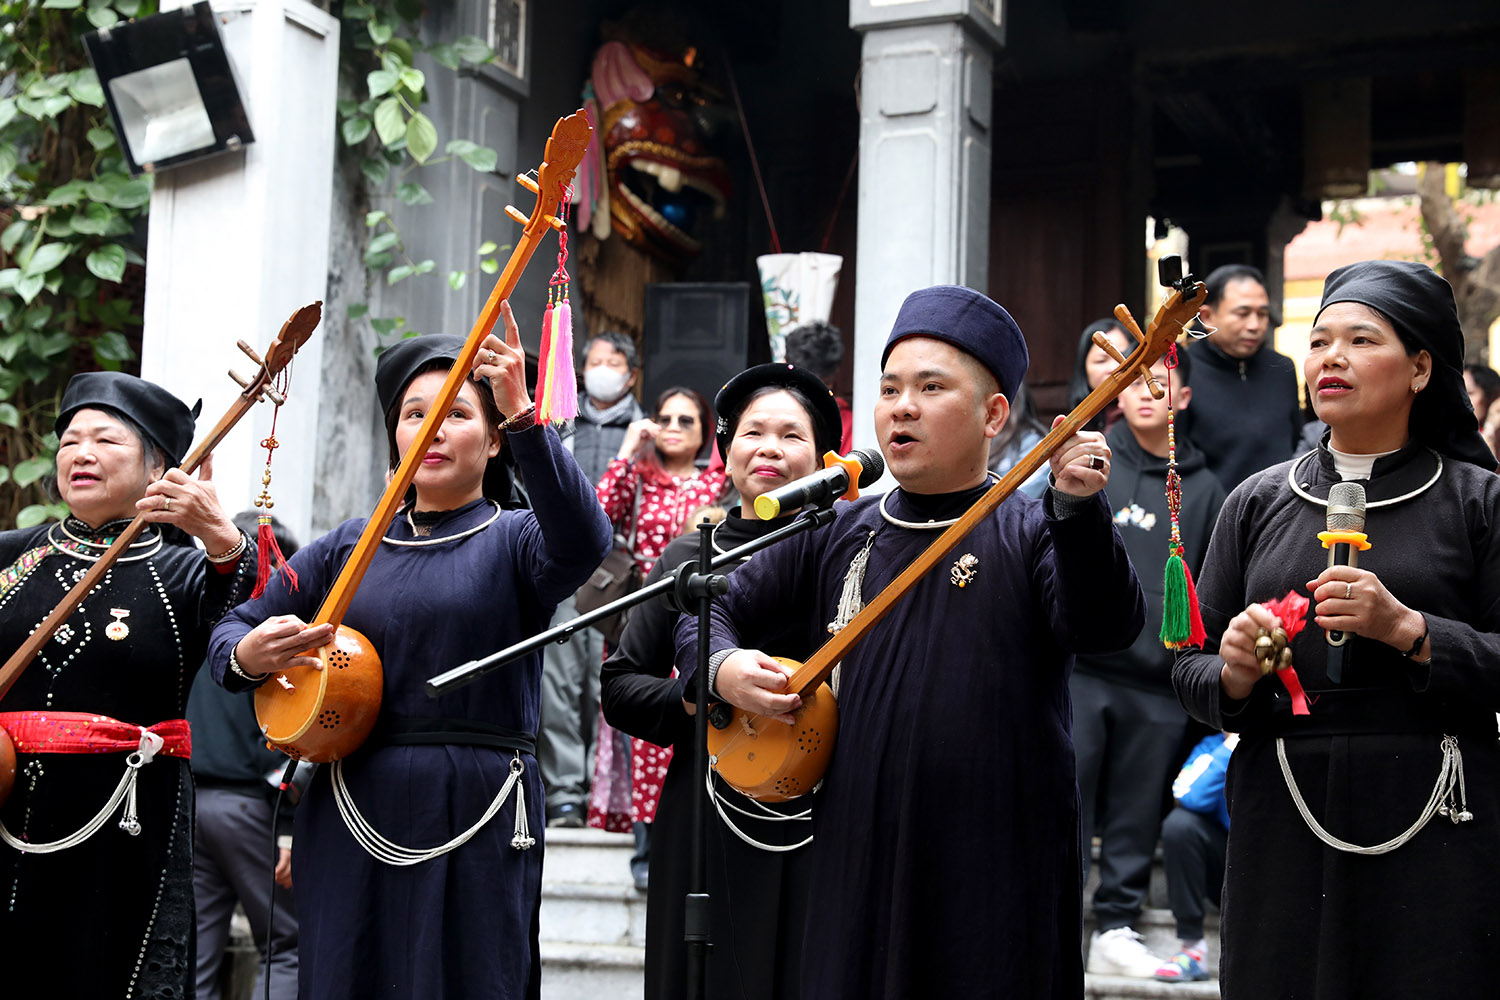 太原省岱依族和农族艺术家带来了独特的天曲旋律。